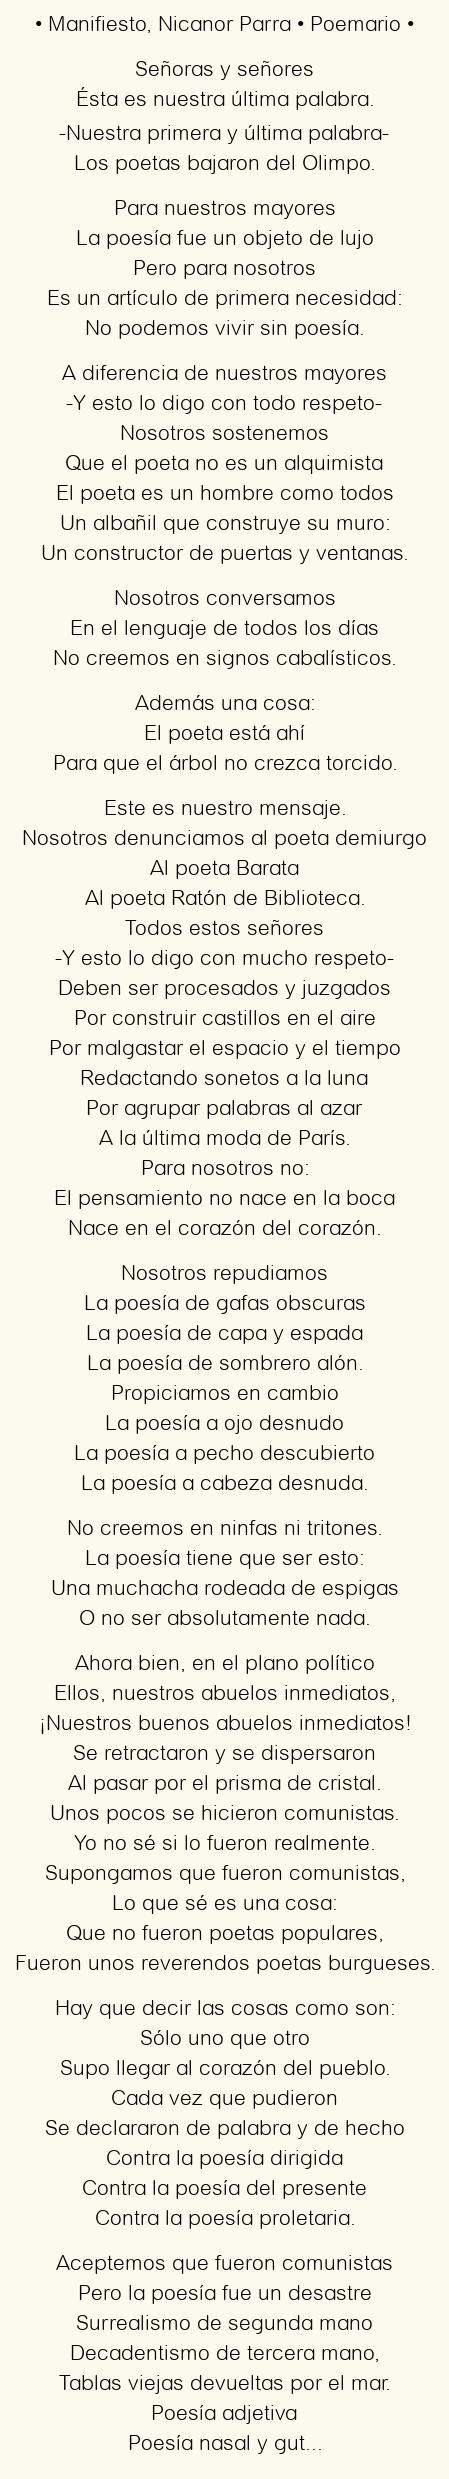 Imagen con el poema Manifiesto, por Nicanor Parra